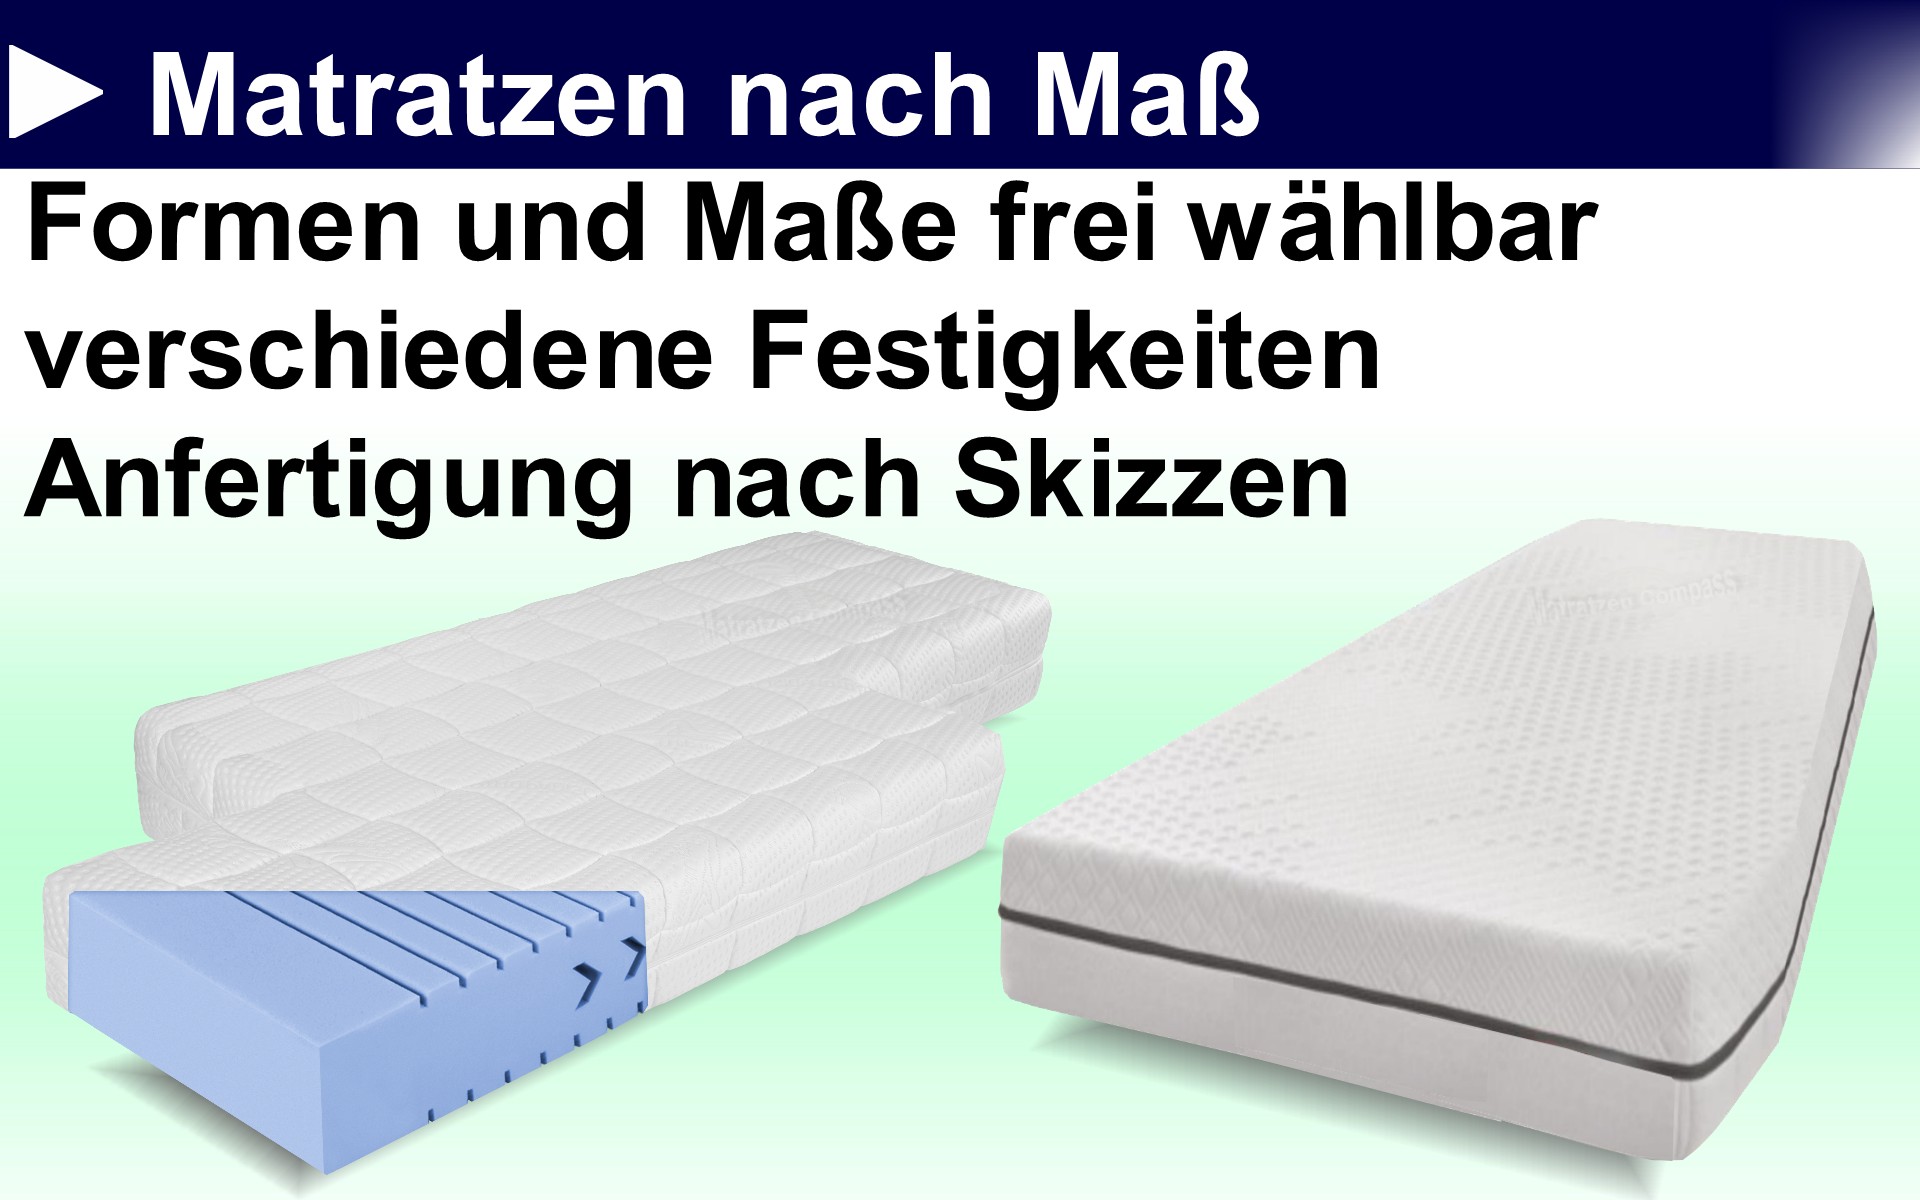 Matratzen-nach-Mass-Wohnmobilmatratzen-Wohnwagenmatratzen-Wohnmobilmatratzen-Berlin-Wohnwagenmatratzen-Berlin-Bootsmatratzen-Bootsmatratzen-Berlin